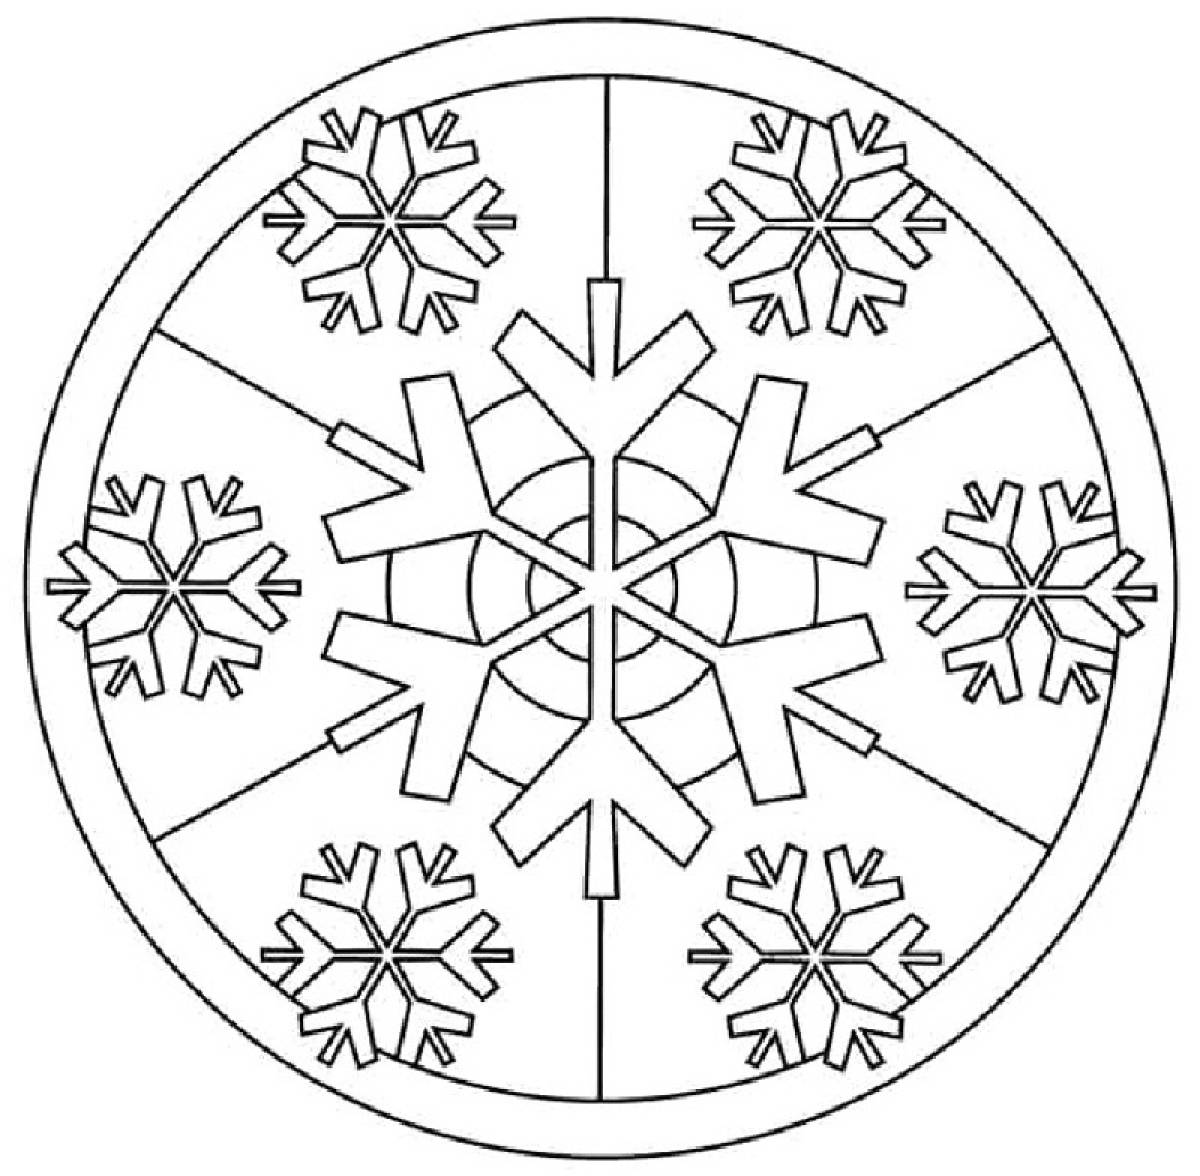 Round snowflake